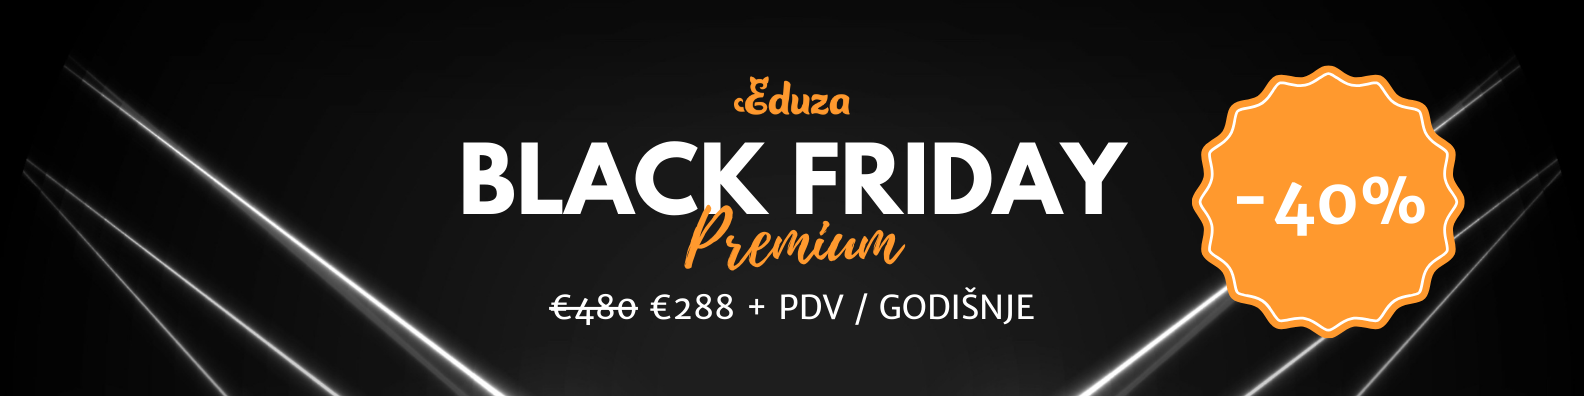 Eduza Black Friday Premium